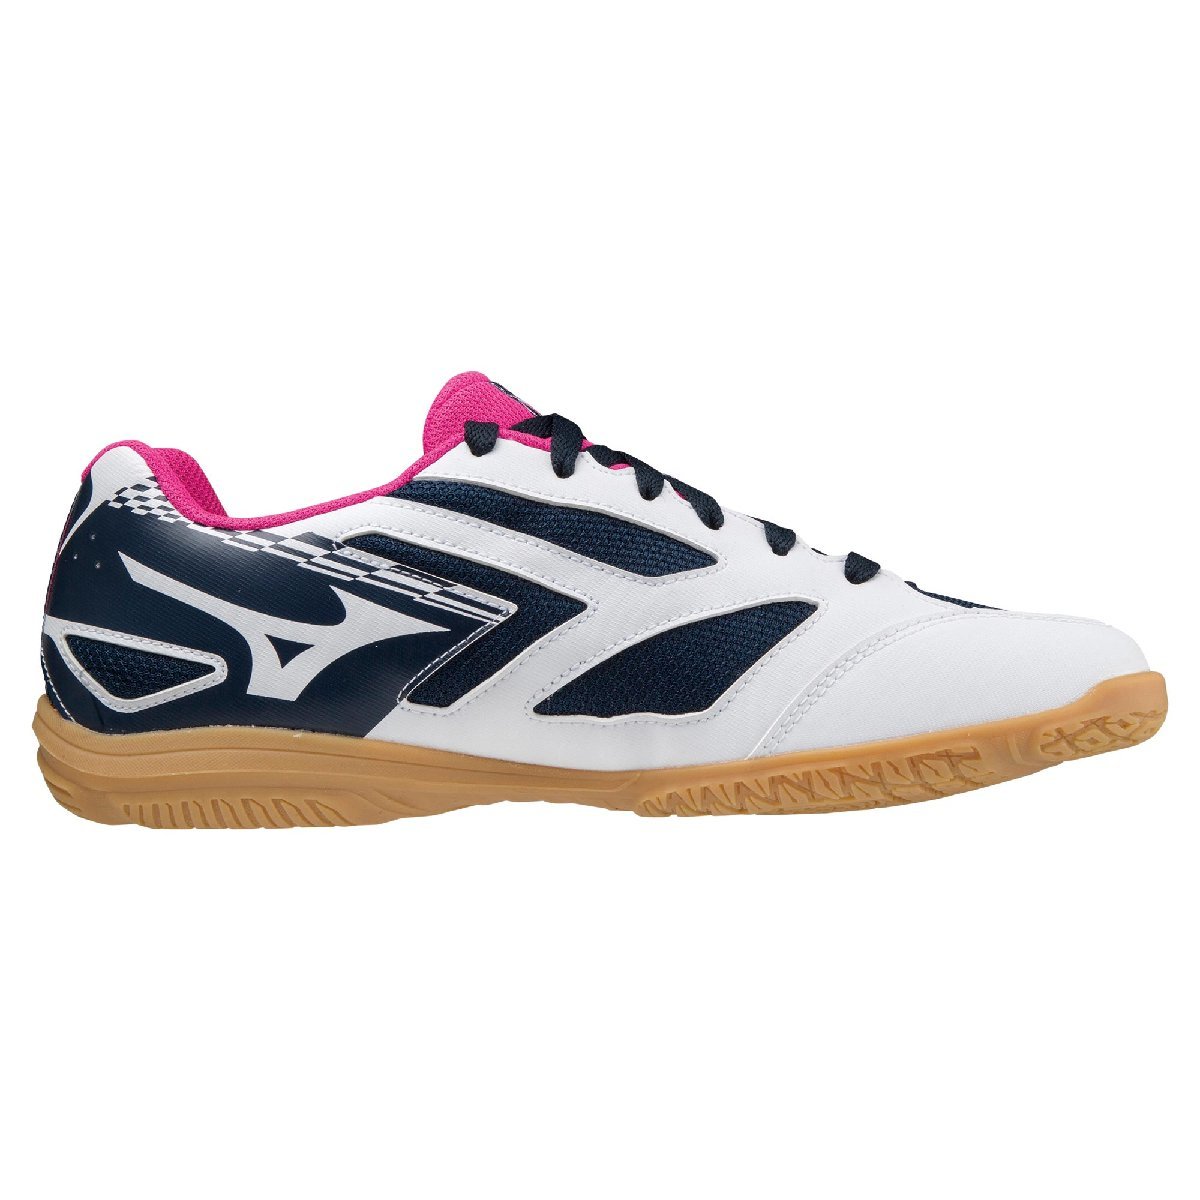 25.5cm Mizuno настольный теннис обувь Cross Match so-do81GA213014 белый × темно-синий × розовый 